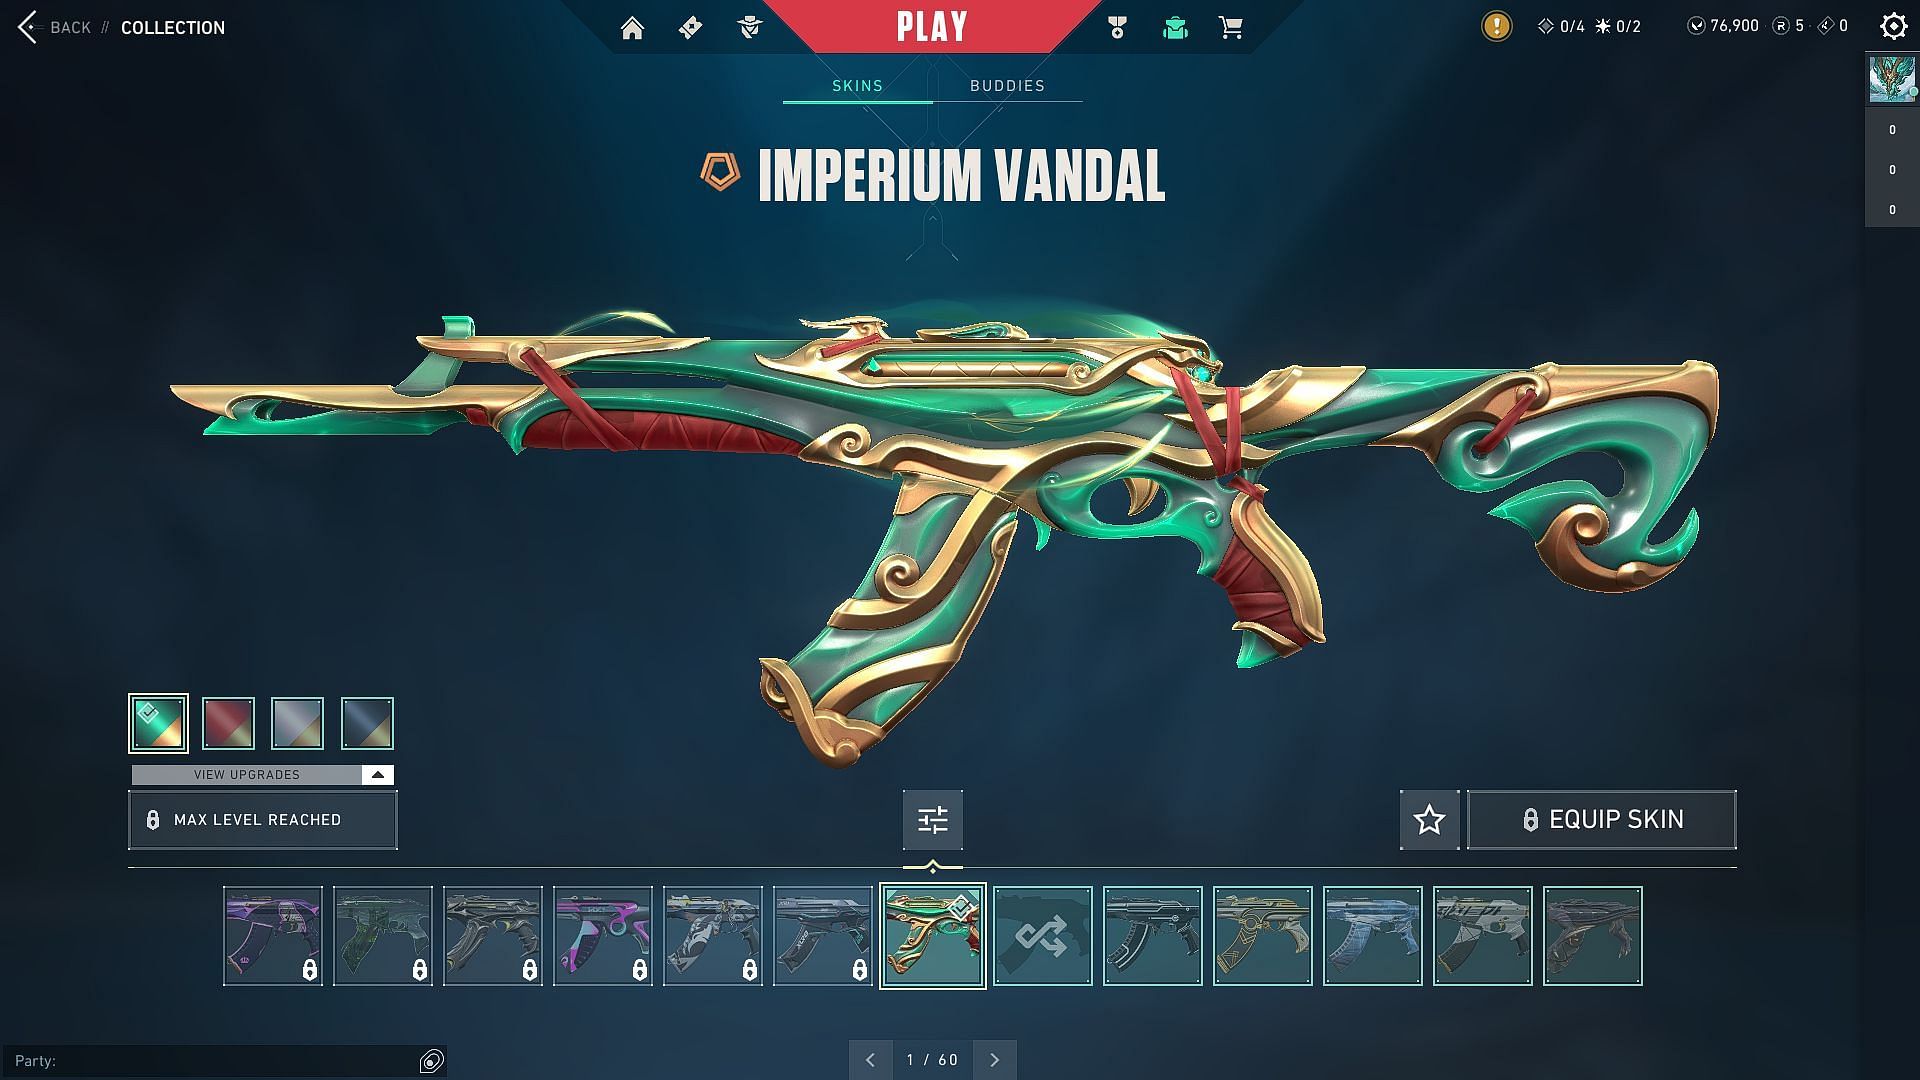 Imperium Vandal (Image via Riot Games)